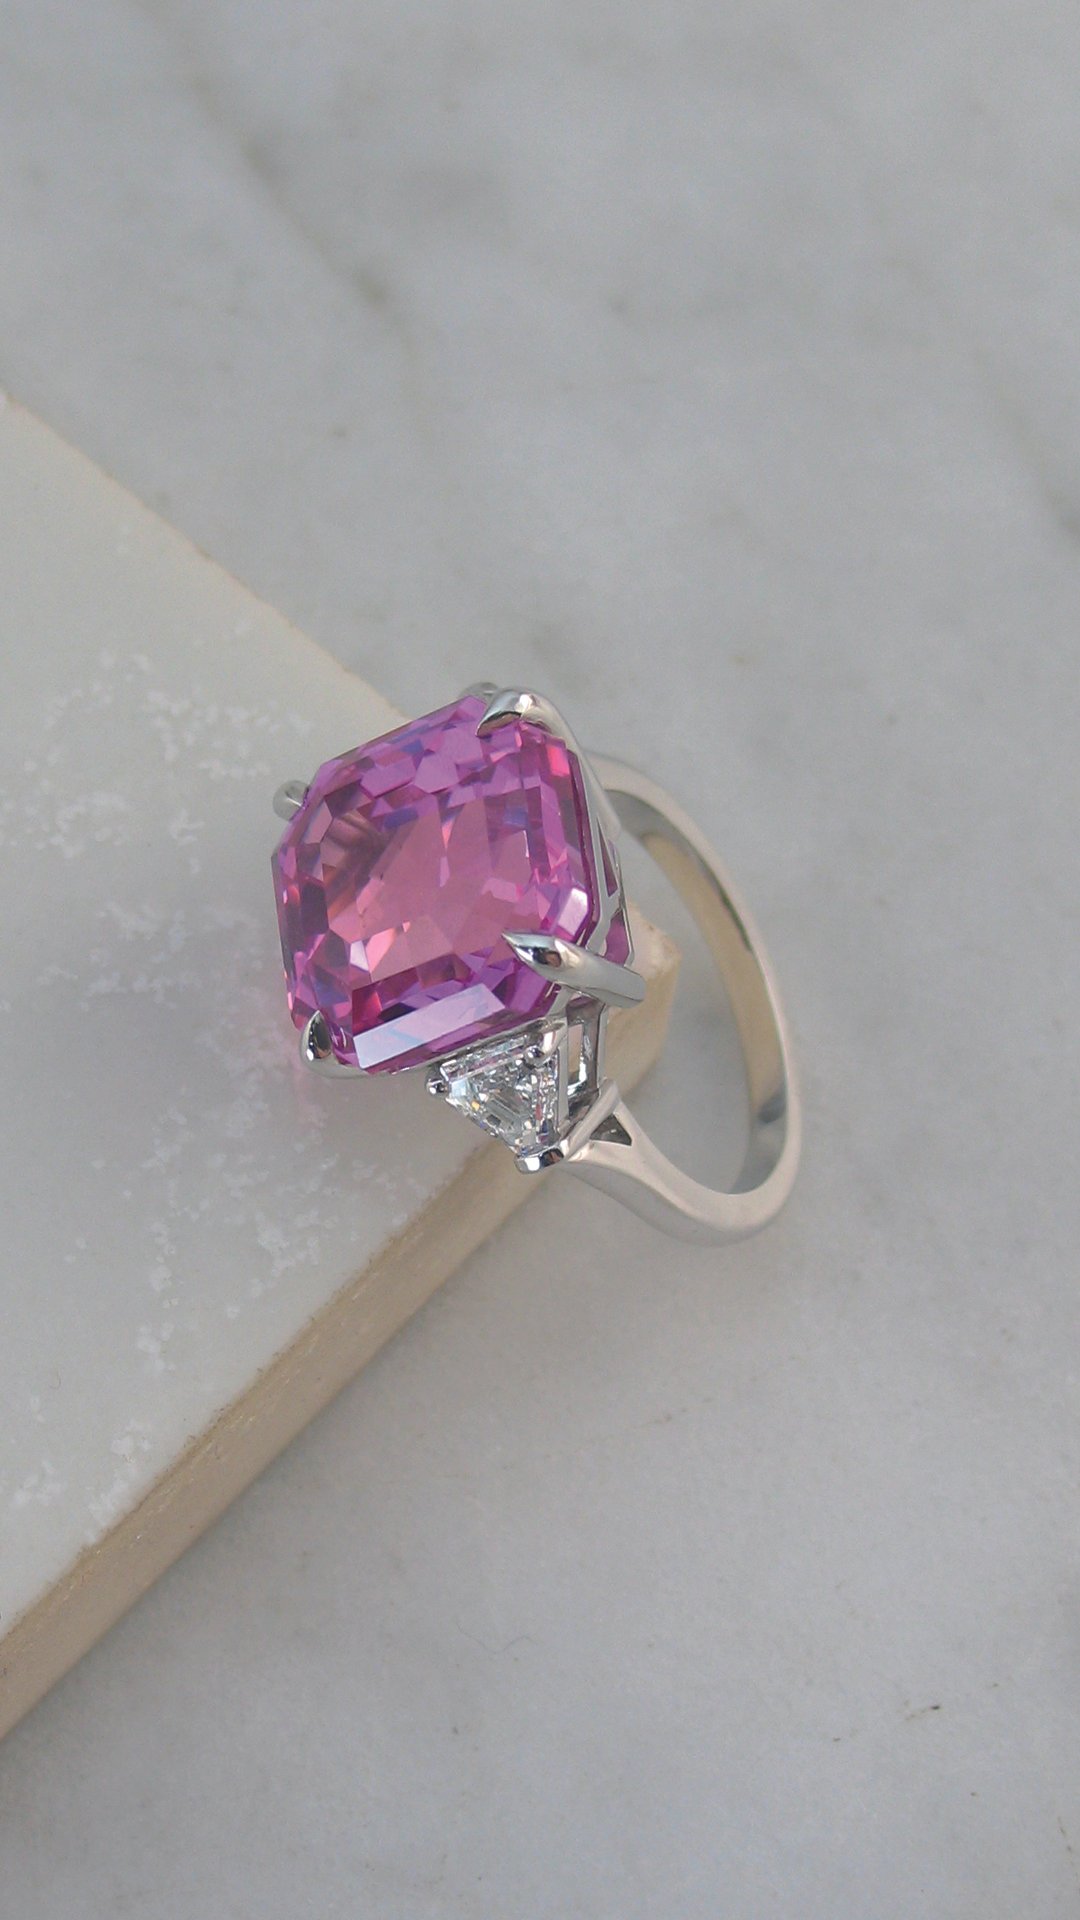 A dazzling Asscher cut pink sapphire and diamond ring